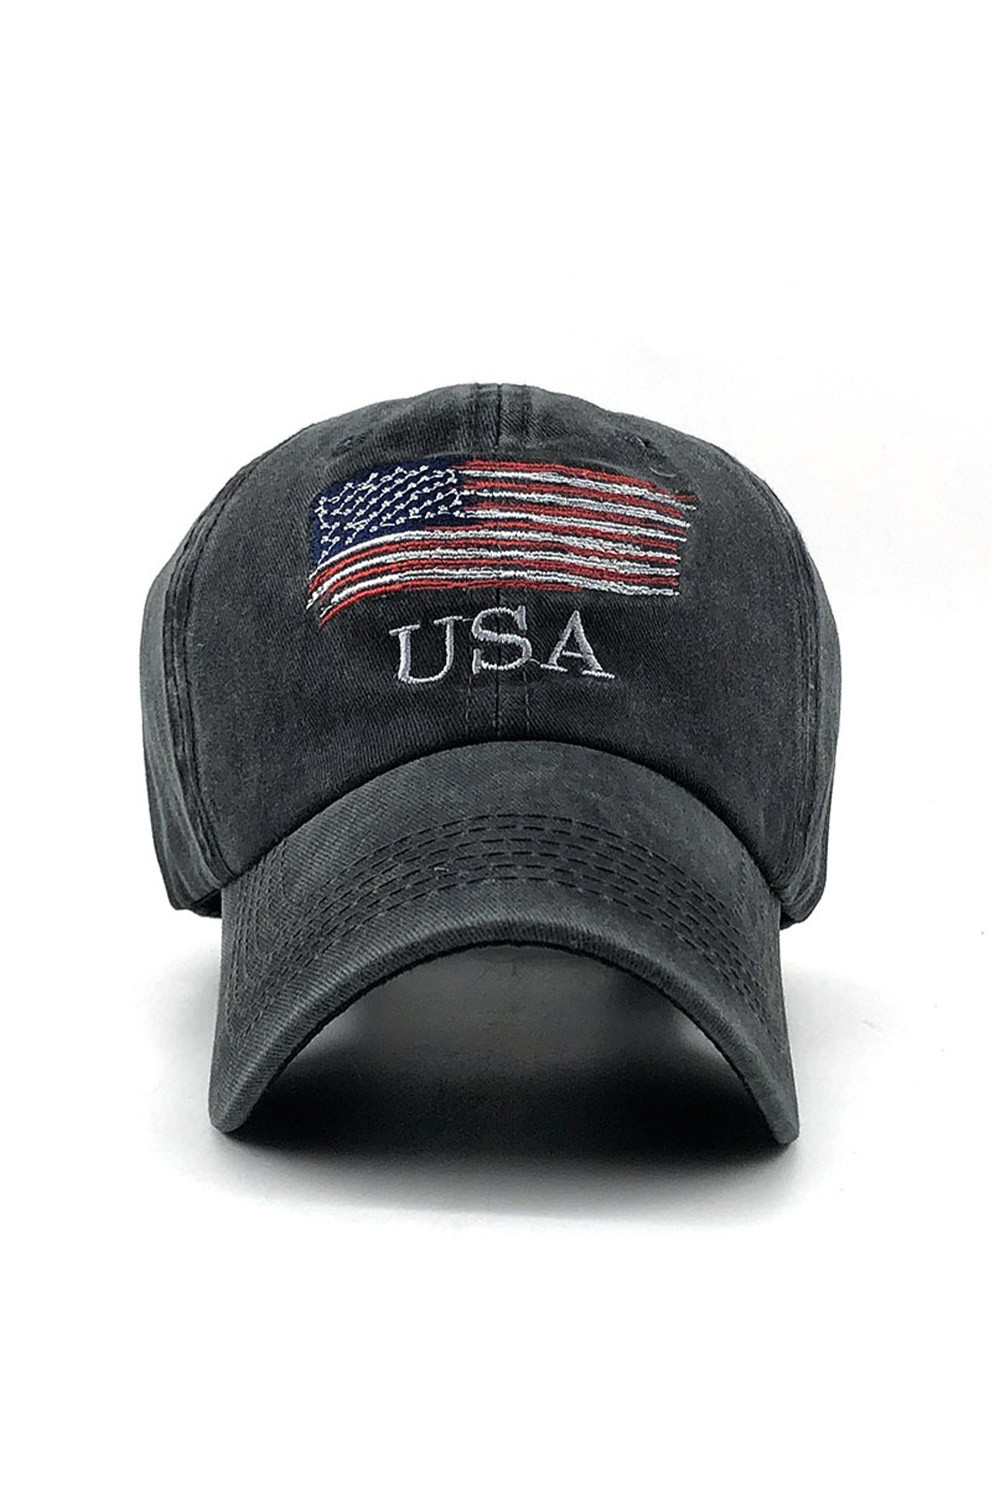 黑色美国国旗刺绣男士棒球帽 LC02703